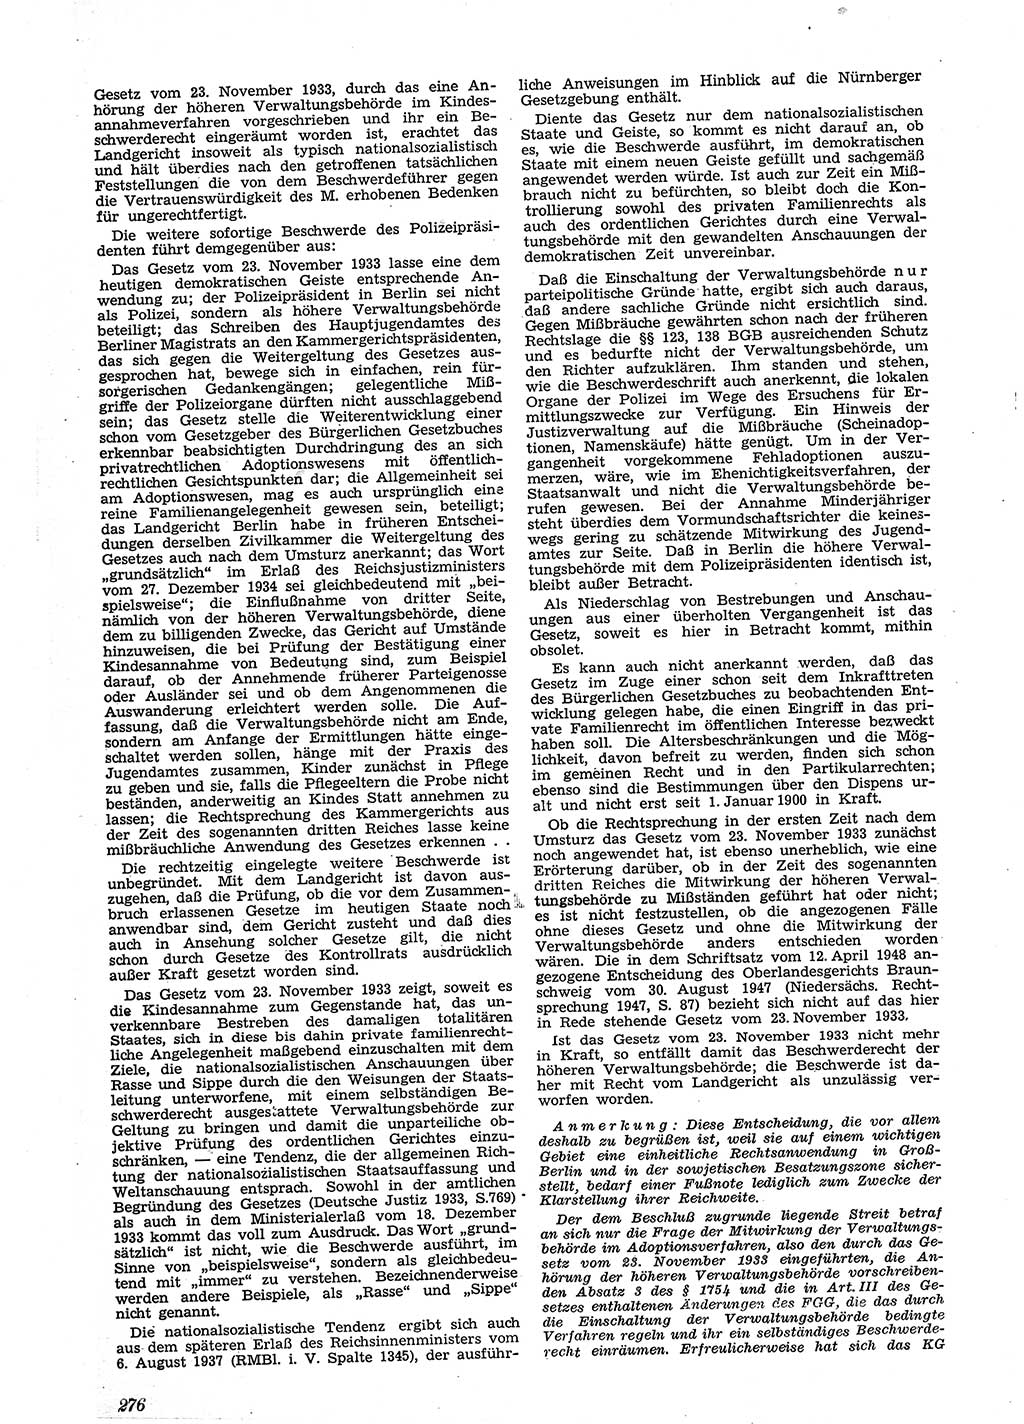 Neue Justiz (NJ), Zeitschrift für Recht und Rechtswissenschaft [Sowjetische Besatzungszone (SBZ) Deutschland], 2. Jahrgang 1948, Seite 276 (NJ SBZ Dtl. 1948, S. 276)